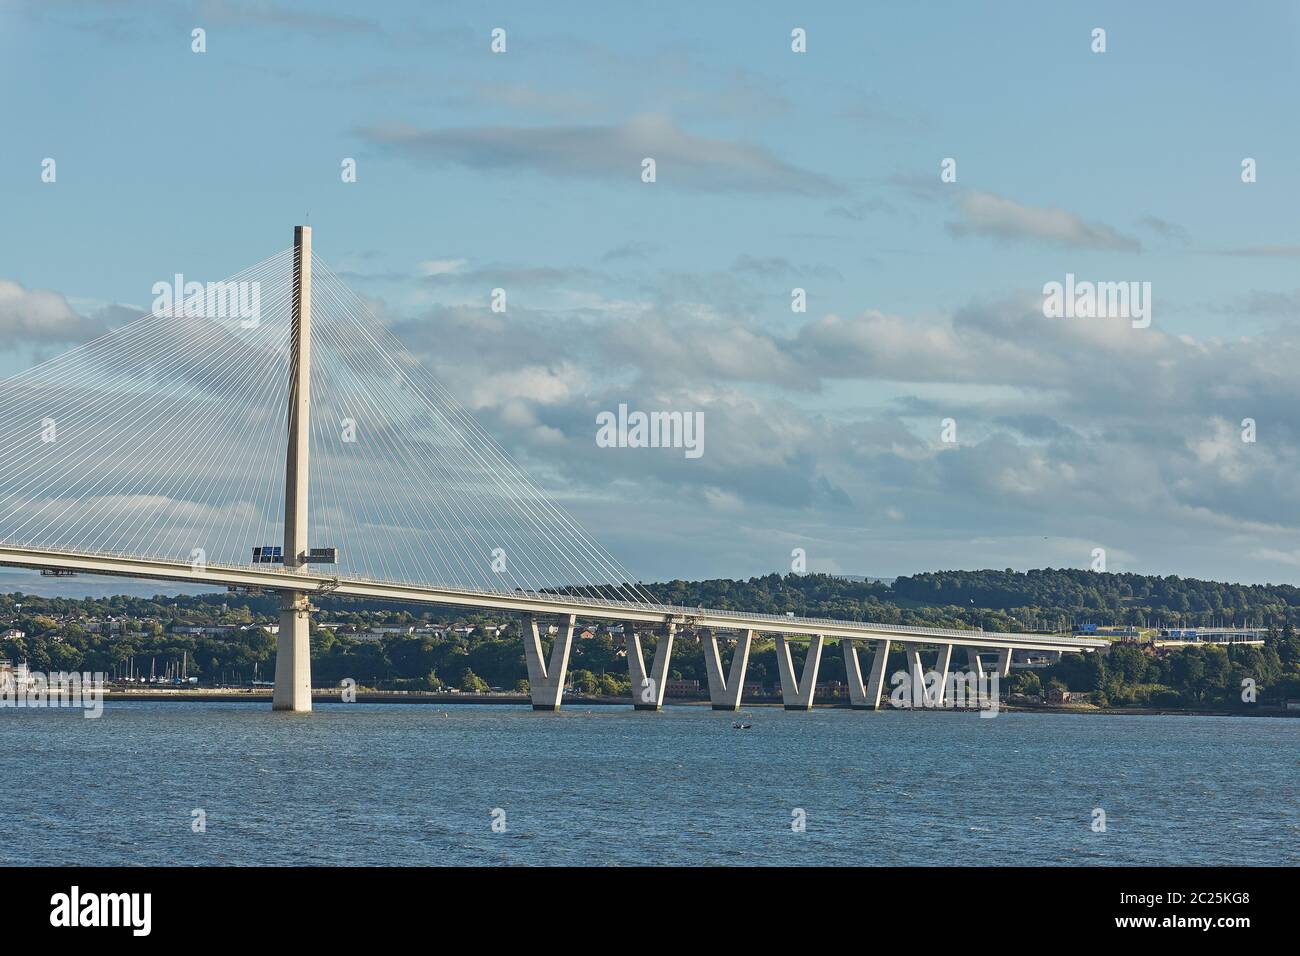 El nuevo puente Queensferry Crossing sobre el Firth of Forth en Edimburgo, Escocia. Foto de stock